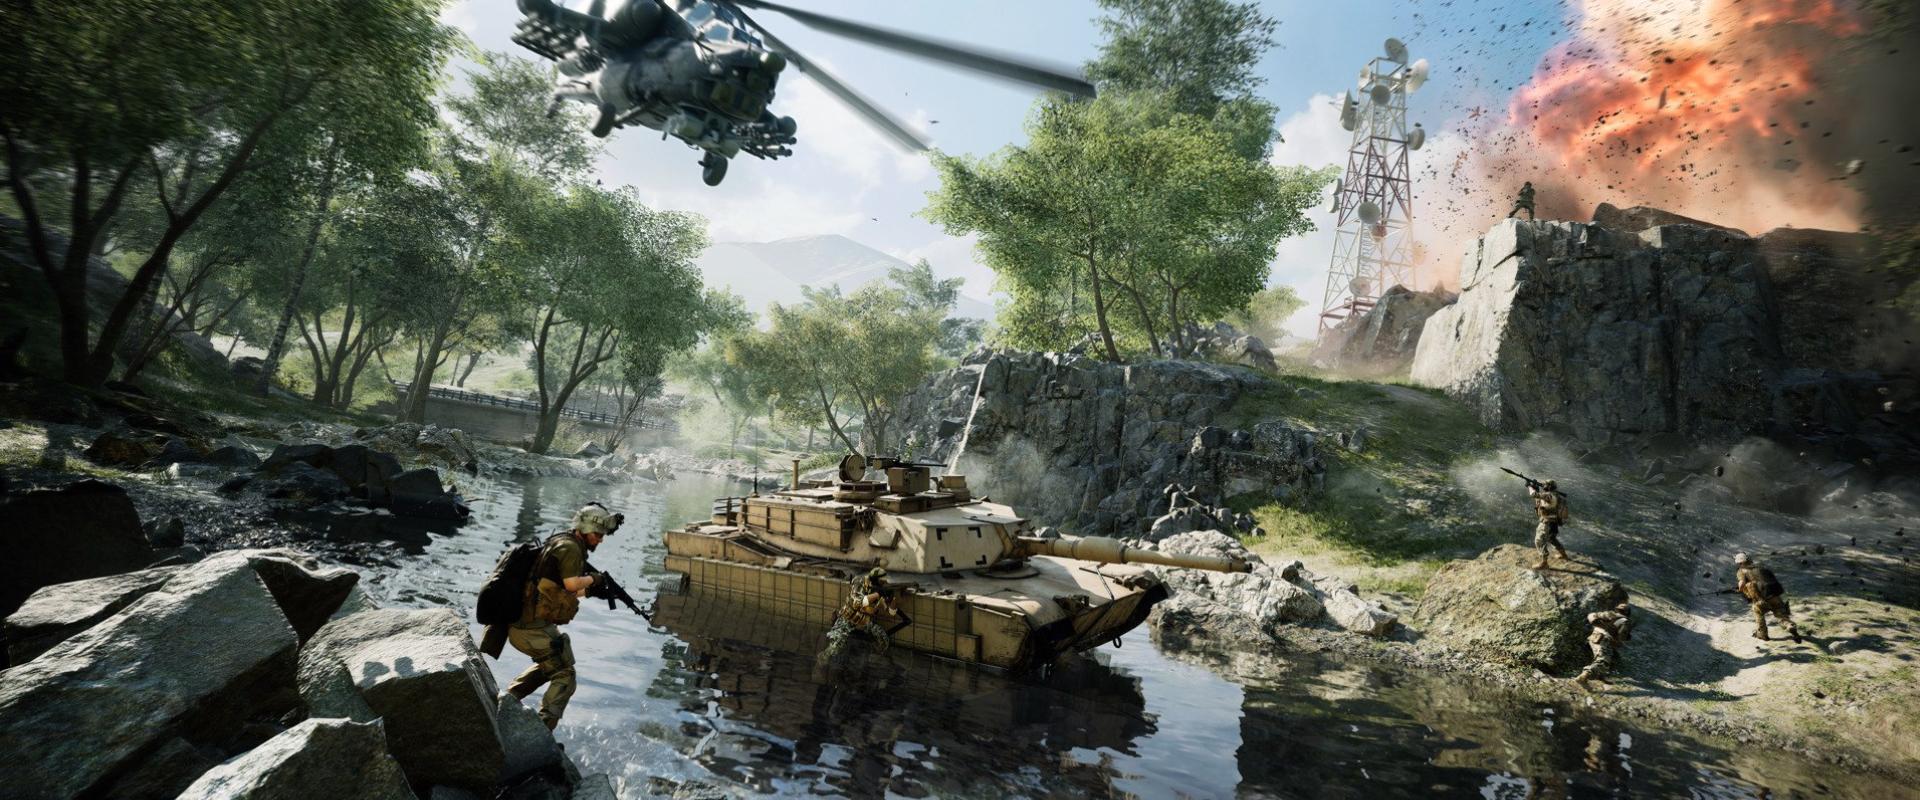 Pár napra ingyenes lesz a Battlefield 2042, mutatjuk a részleteket